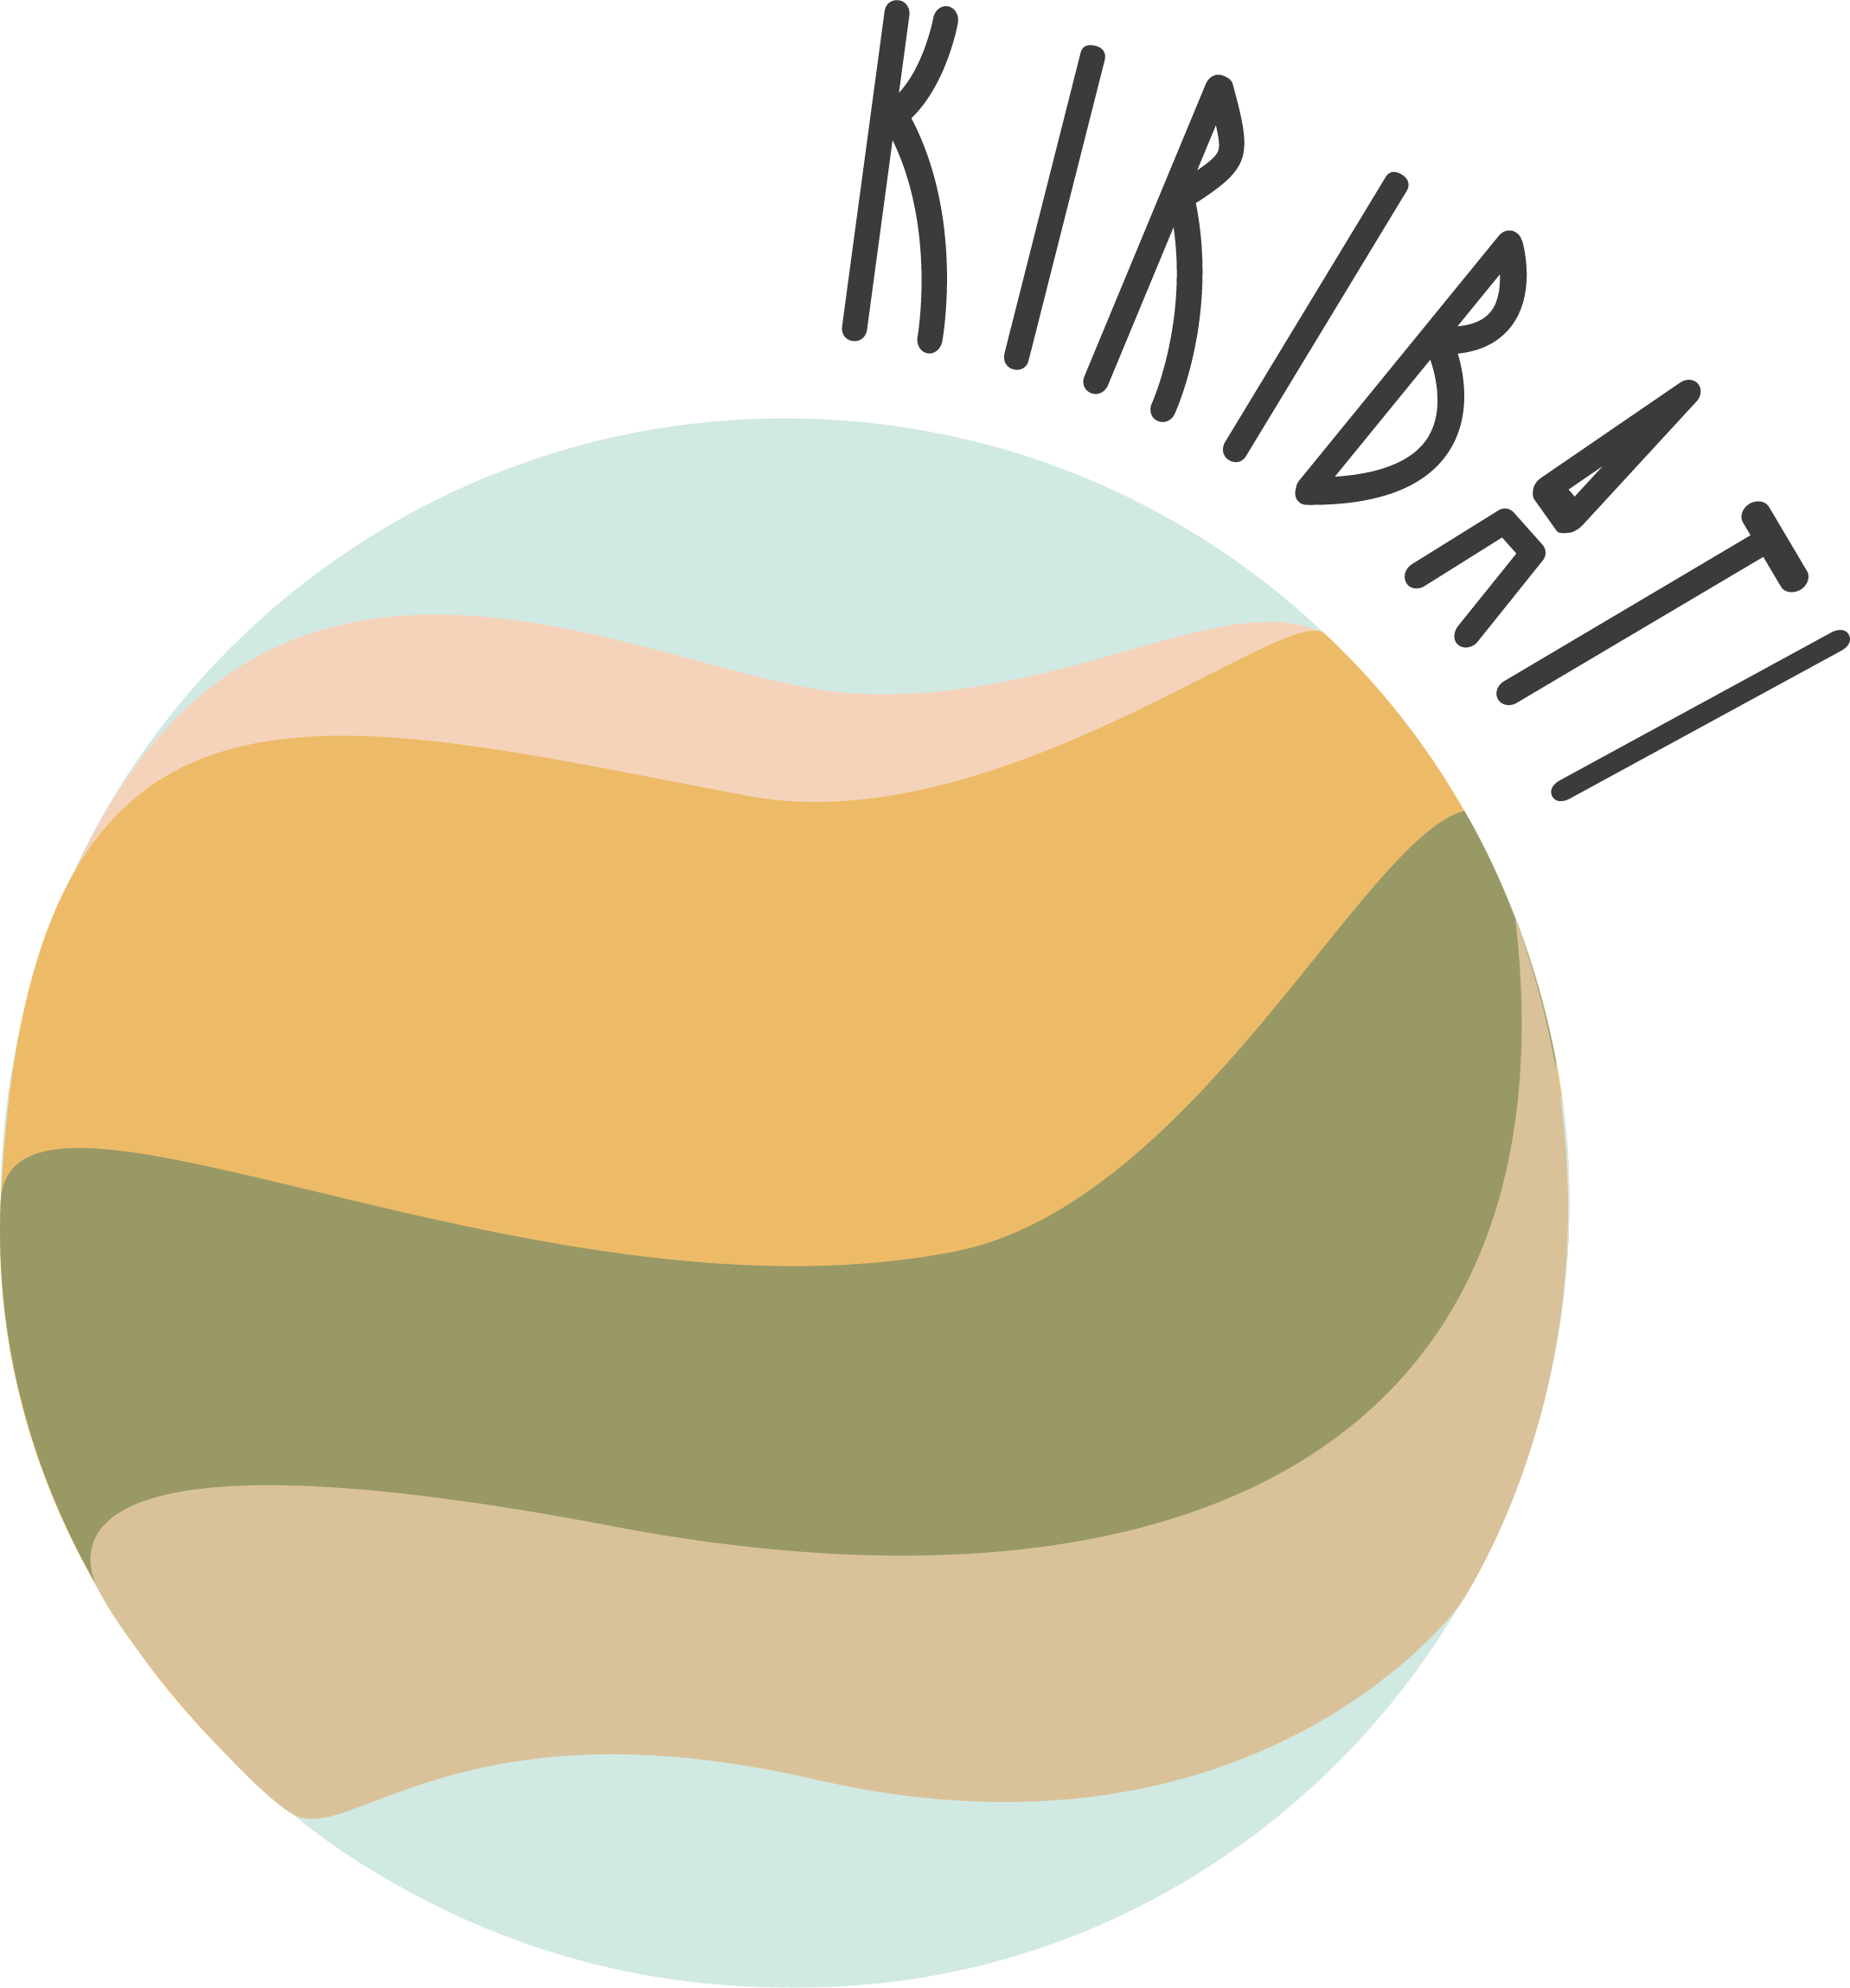 Kirirbati